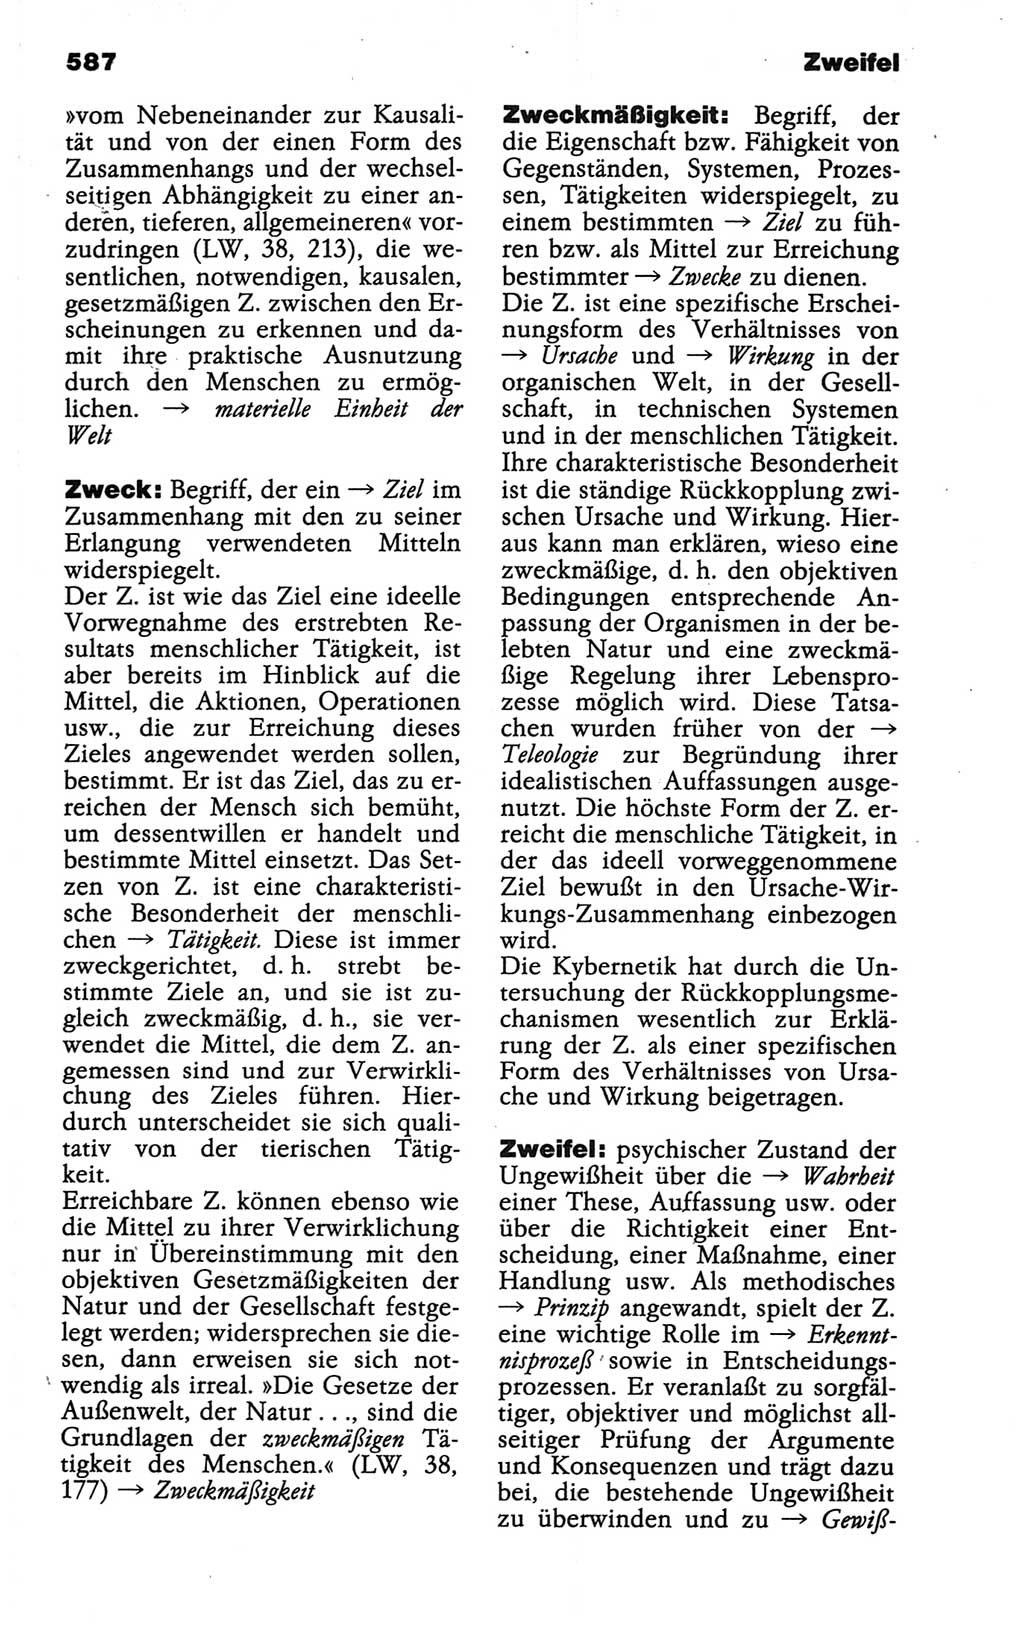 Wörterbuch der marxistisch-leninistischen Philosophie [Deutsche Demokratische Republik (DDR)] 1986, Seite 587 (Wb. ML Phil. DDR 1986, S. 587)